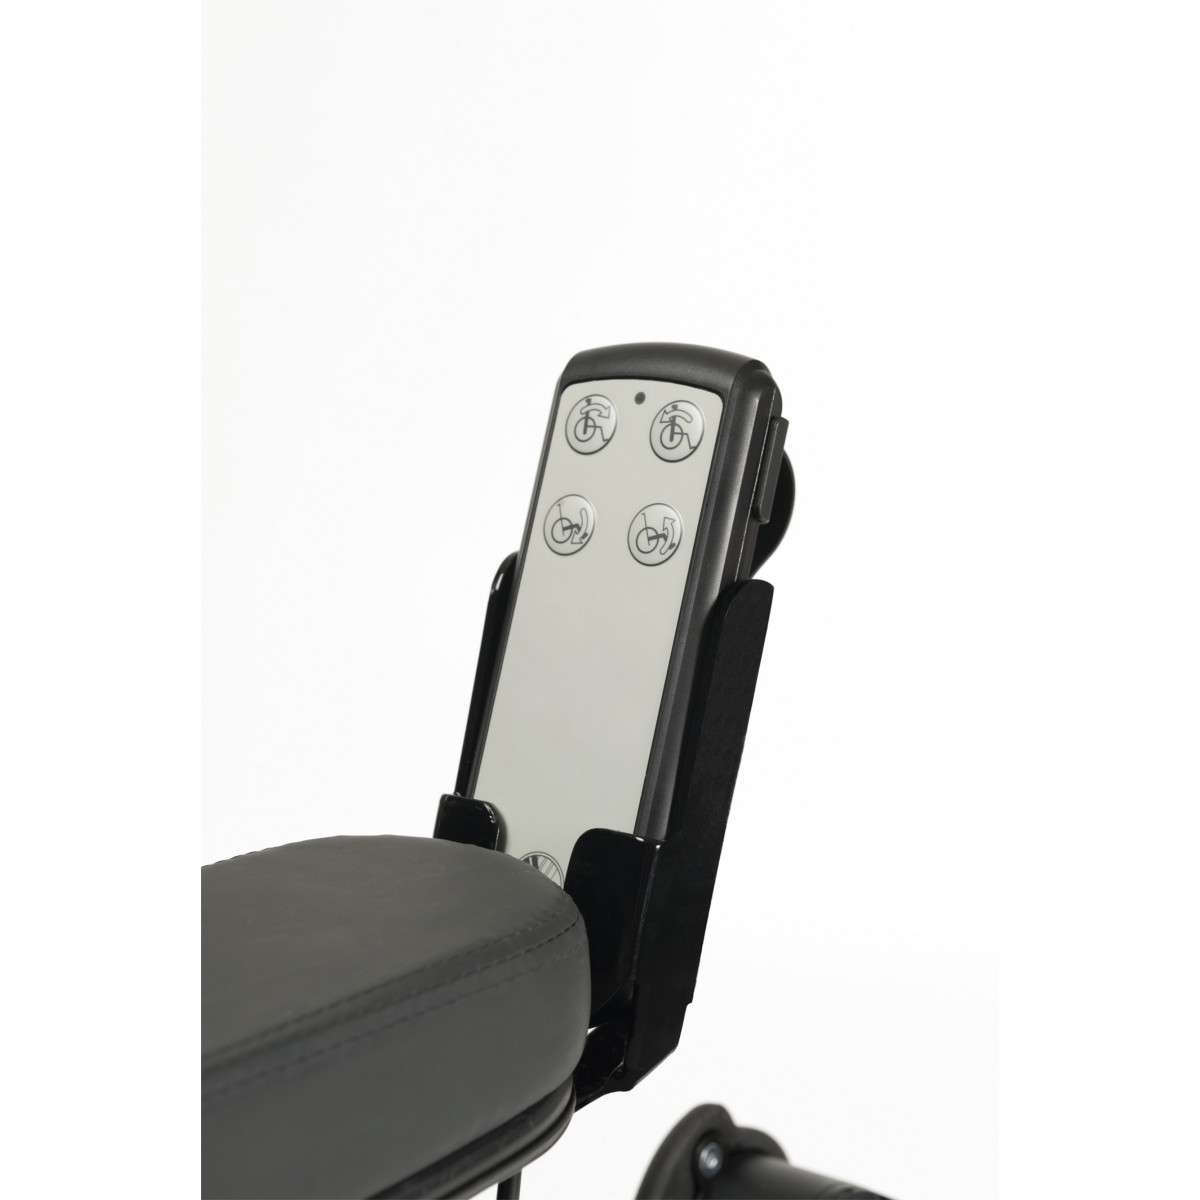 Кресло-коляска с электрическим управлением INOVYS 2-E